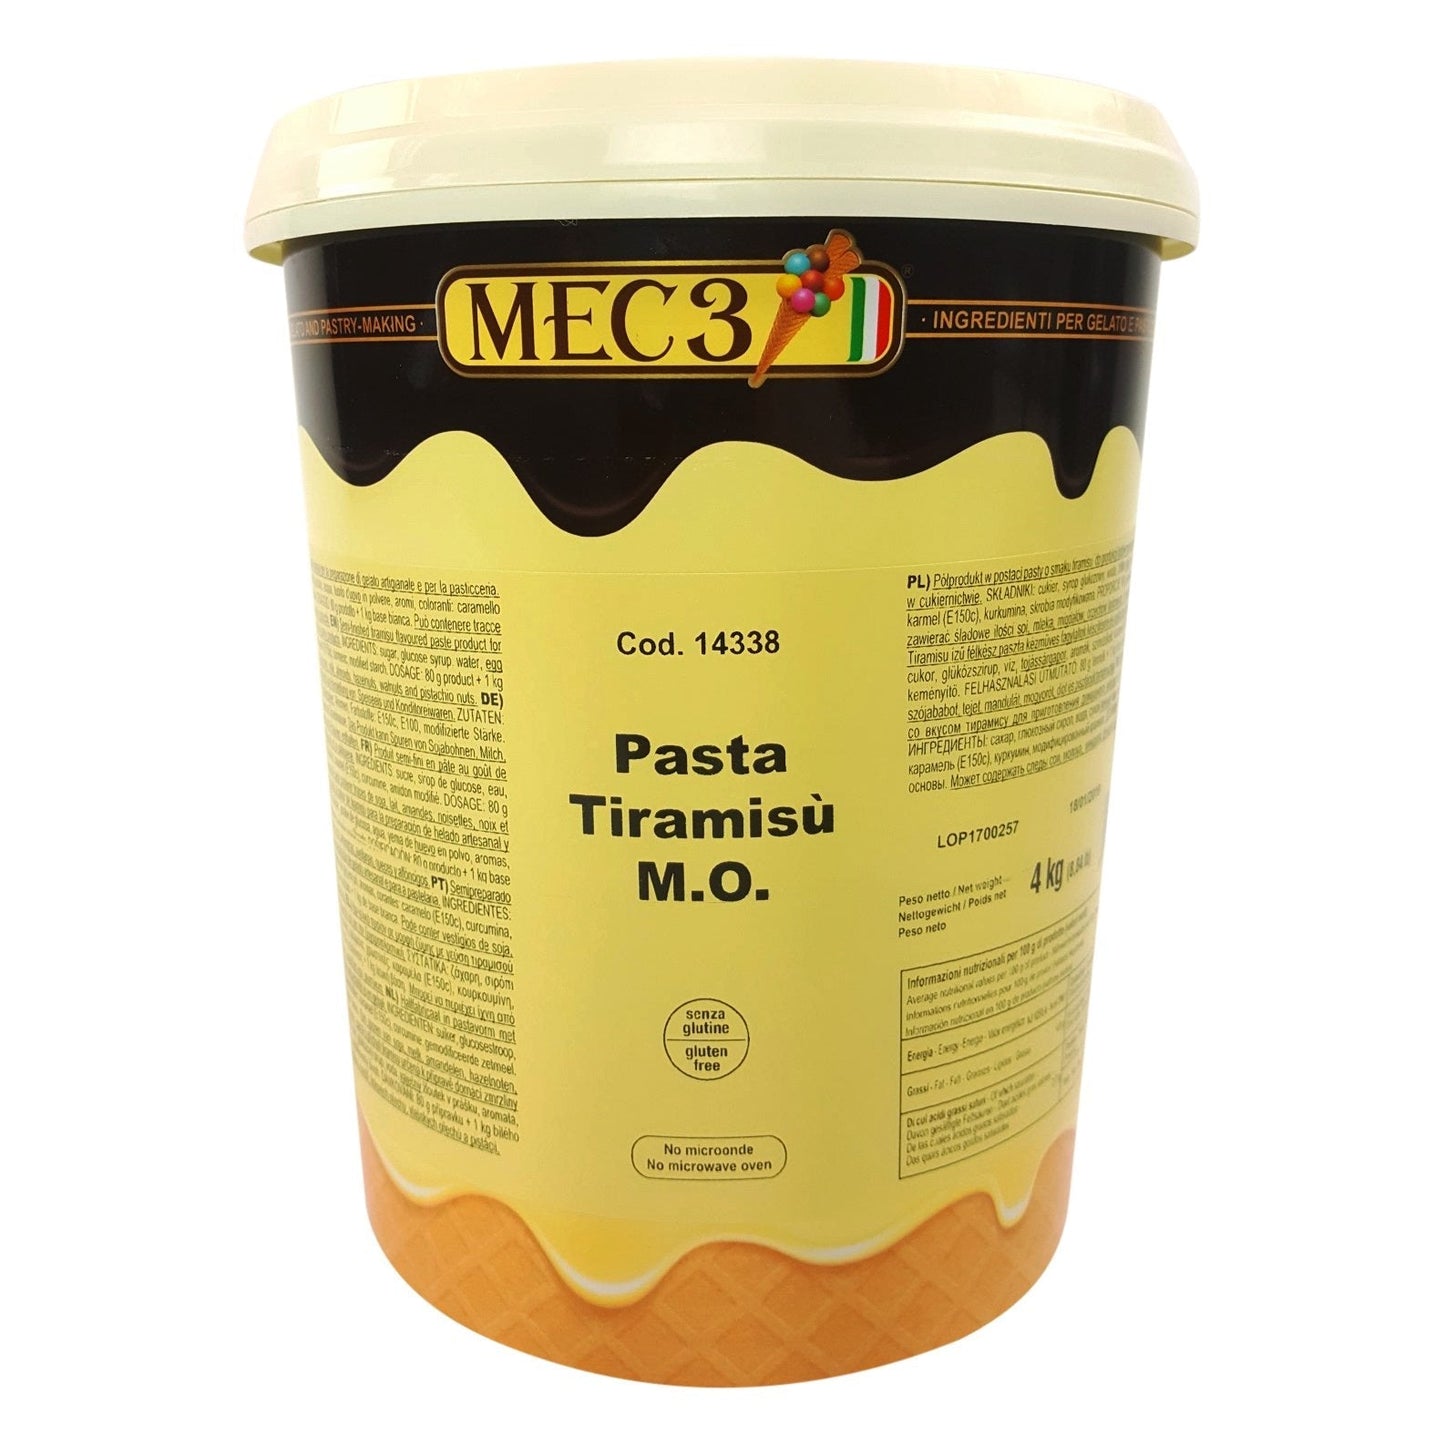 MEC3 Tiramisu Gelato & Pastry Paste